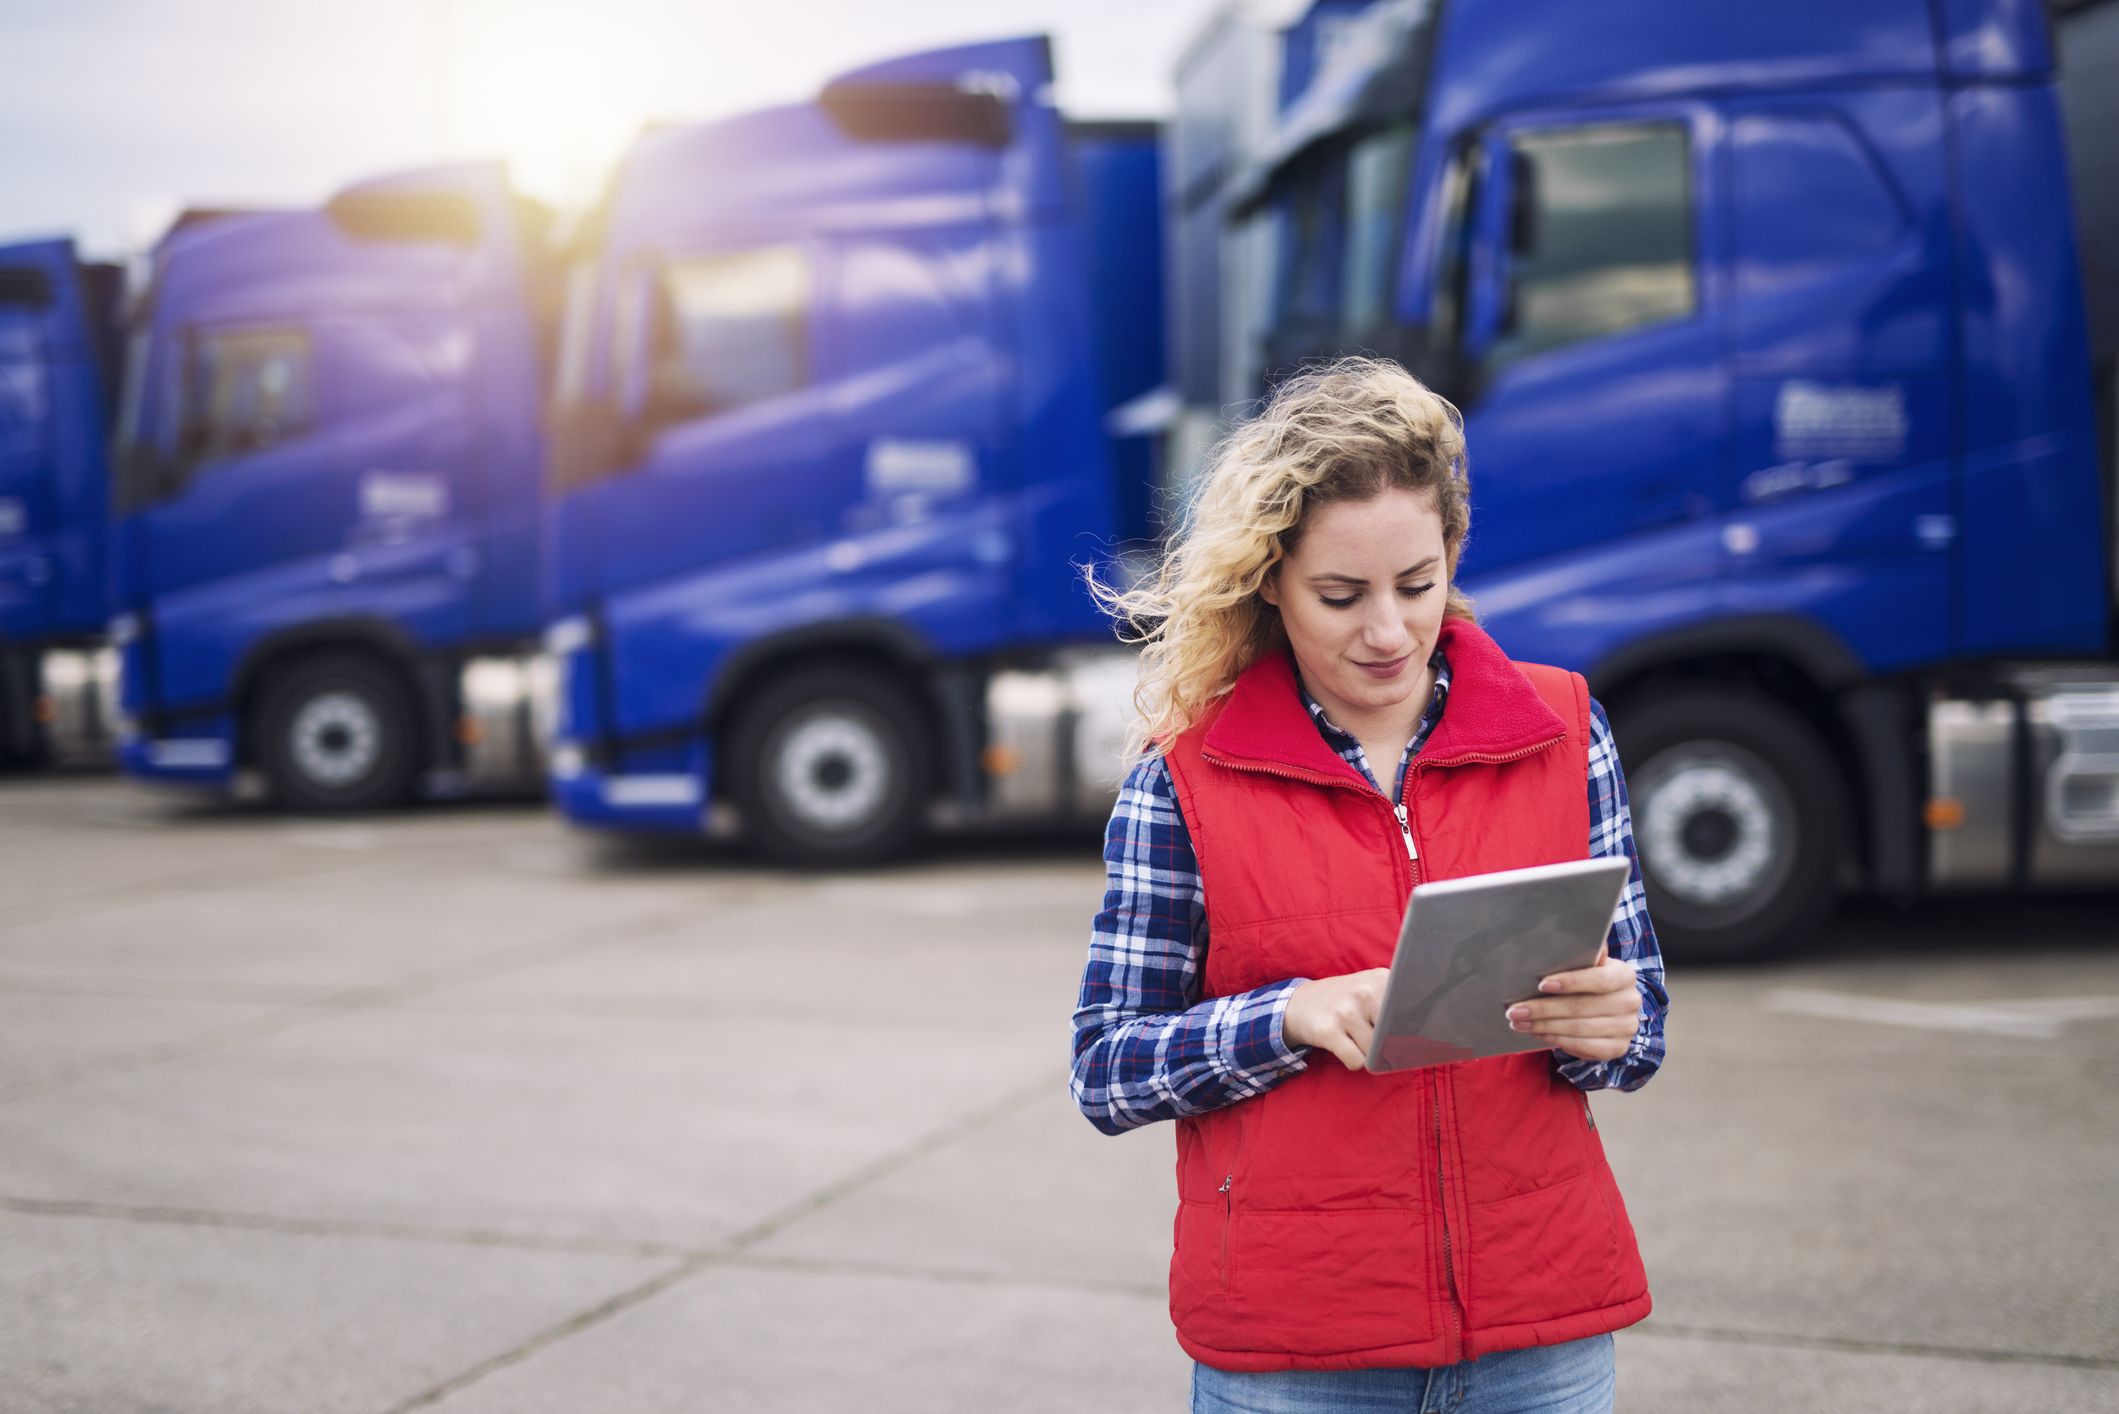  La digitalización del transporte de mercancías reduce ineficiencias y mejora las capacidades de ejecución de las autoridades competentes. (Getty Images)